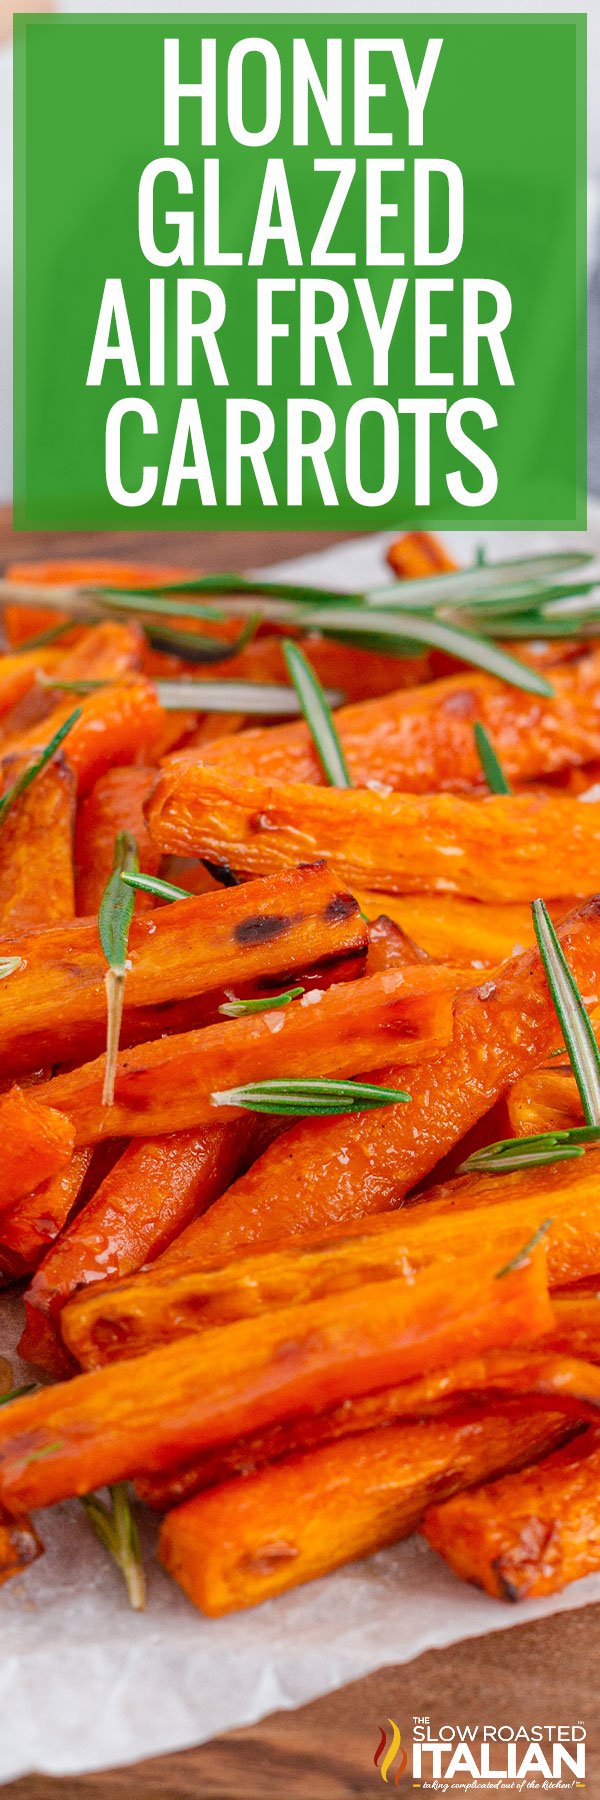 honey glazed air fryer carrots sprinkled with rosemary leaves